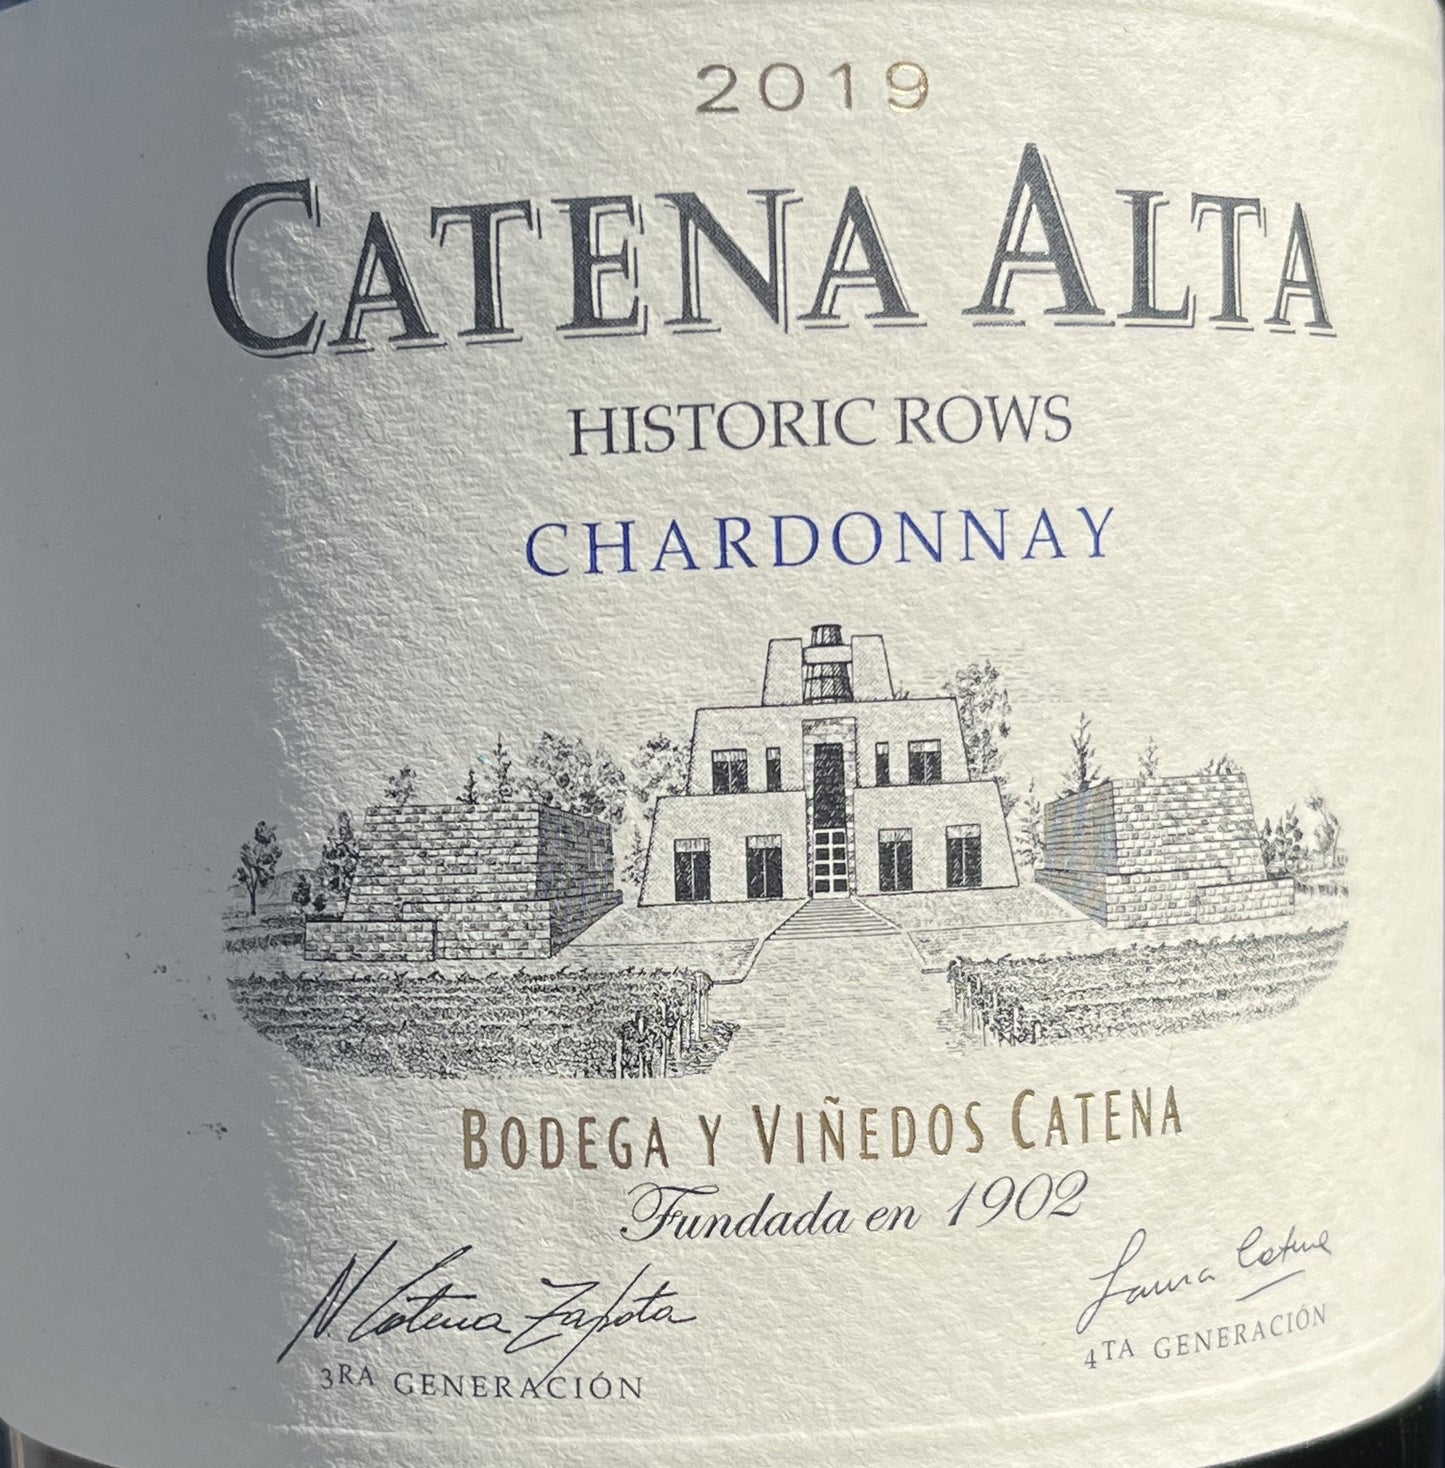 Catena Alta 'Historic Rows' Chardonnay